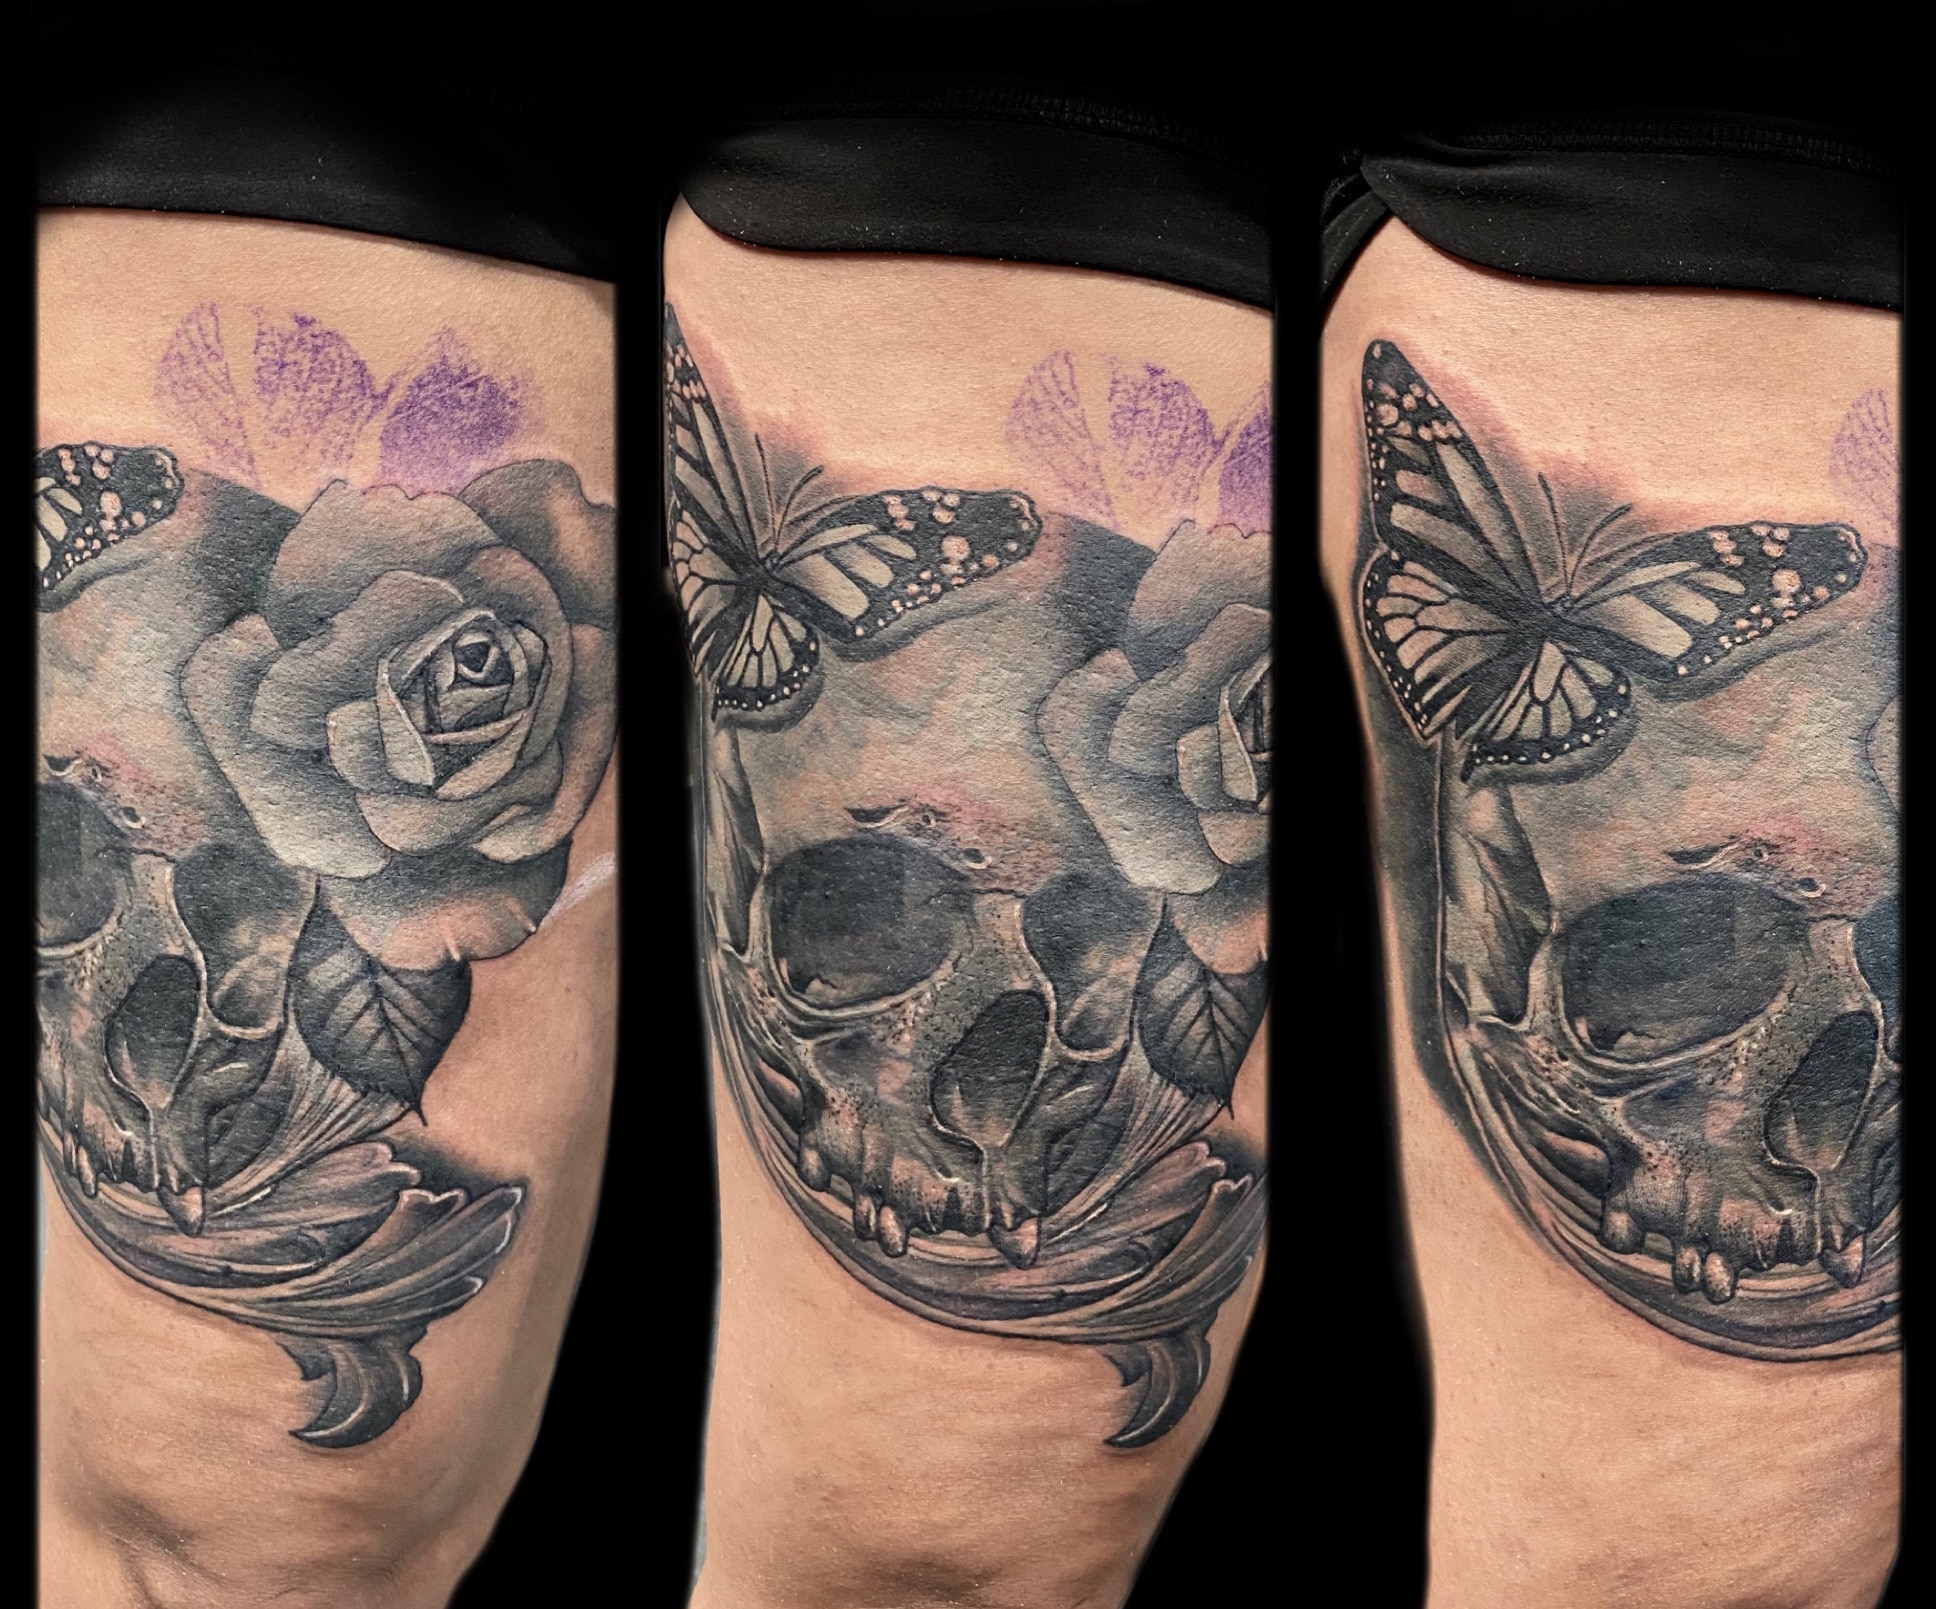 Floral skull tattoo